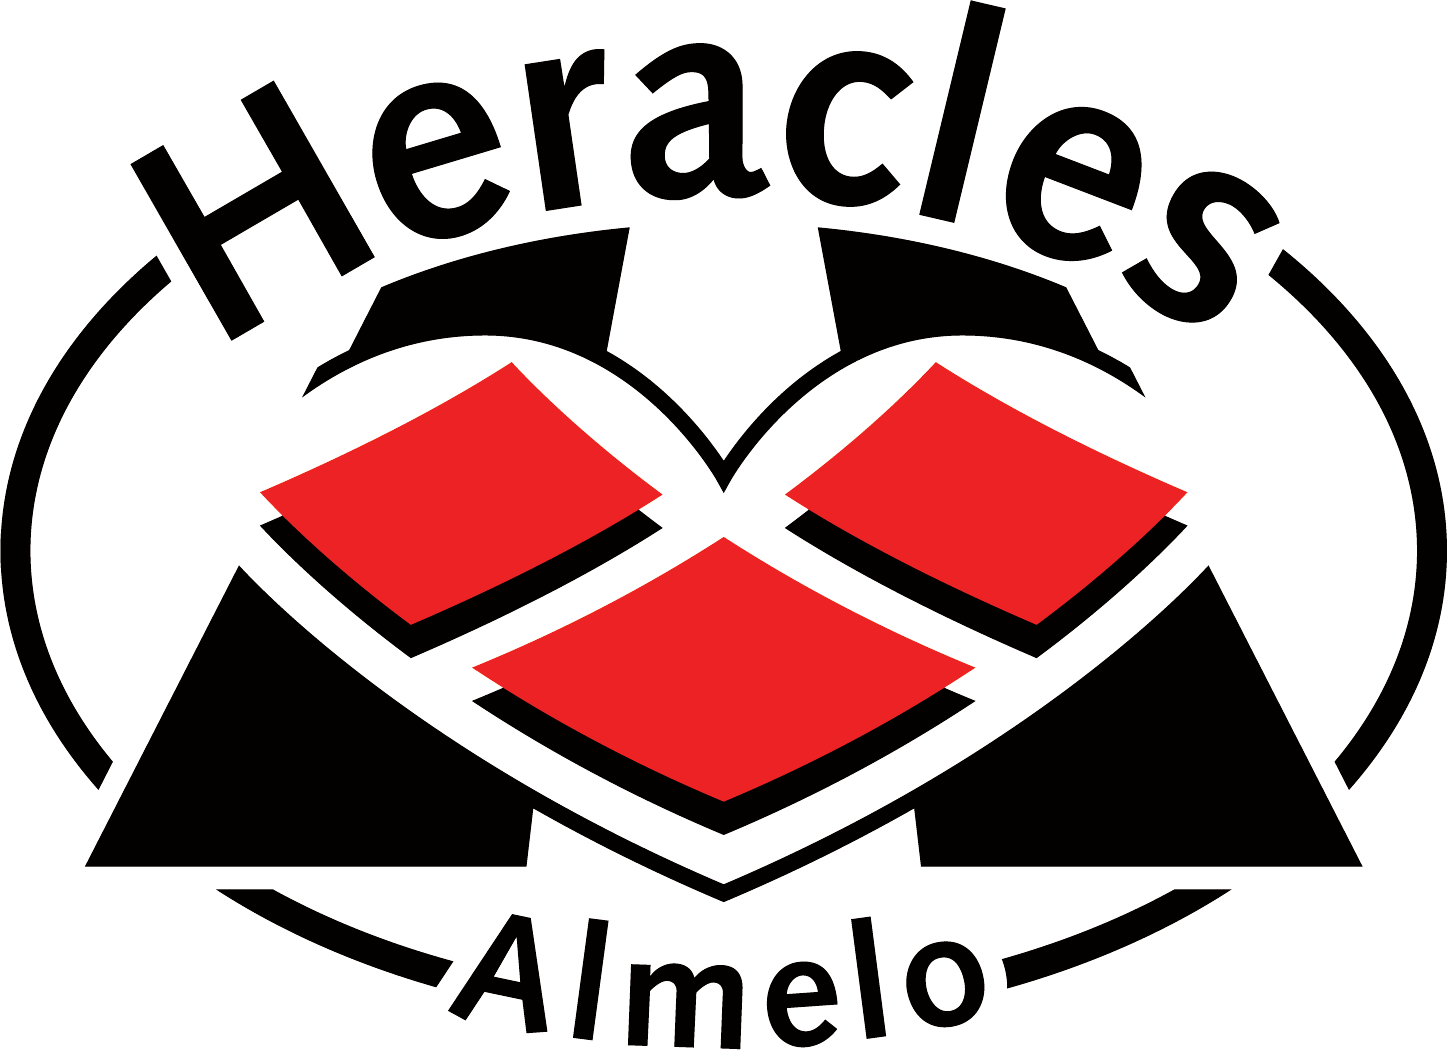 Хераклес Алмело (Алмело)